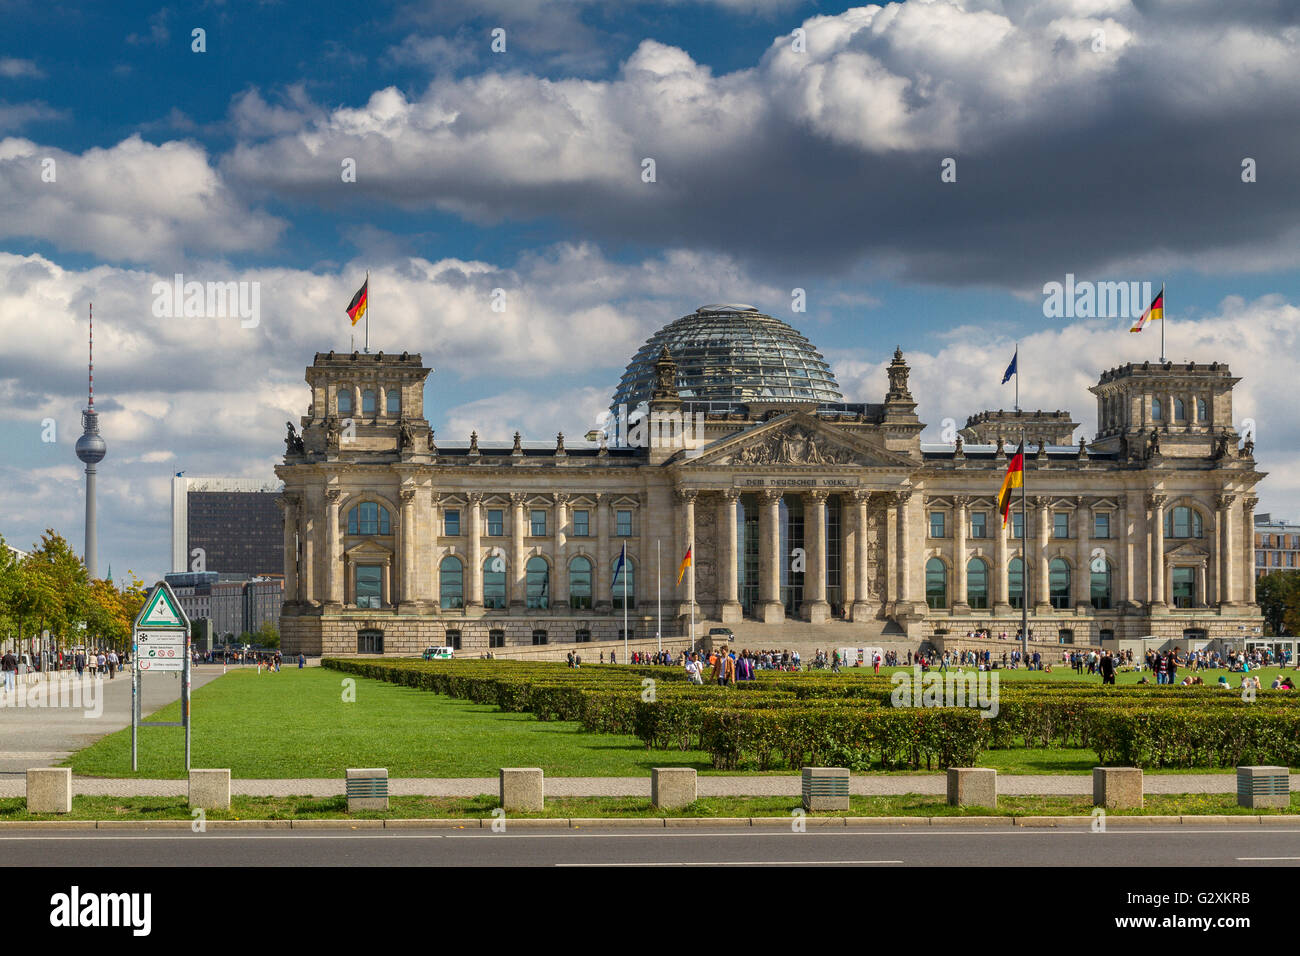 Das Reichstagsgebäude, das den Deutschen Bundestag oder das Deutsche  Parlament beherbergt, mit einer großen Glaskuppel, die von Sir Norman  Foster entworfen wurde Stockfotografie - Alamy